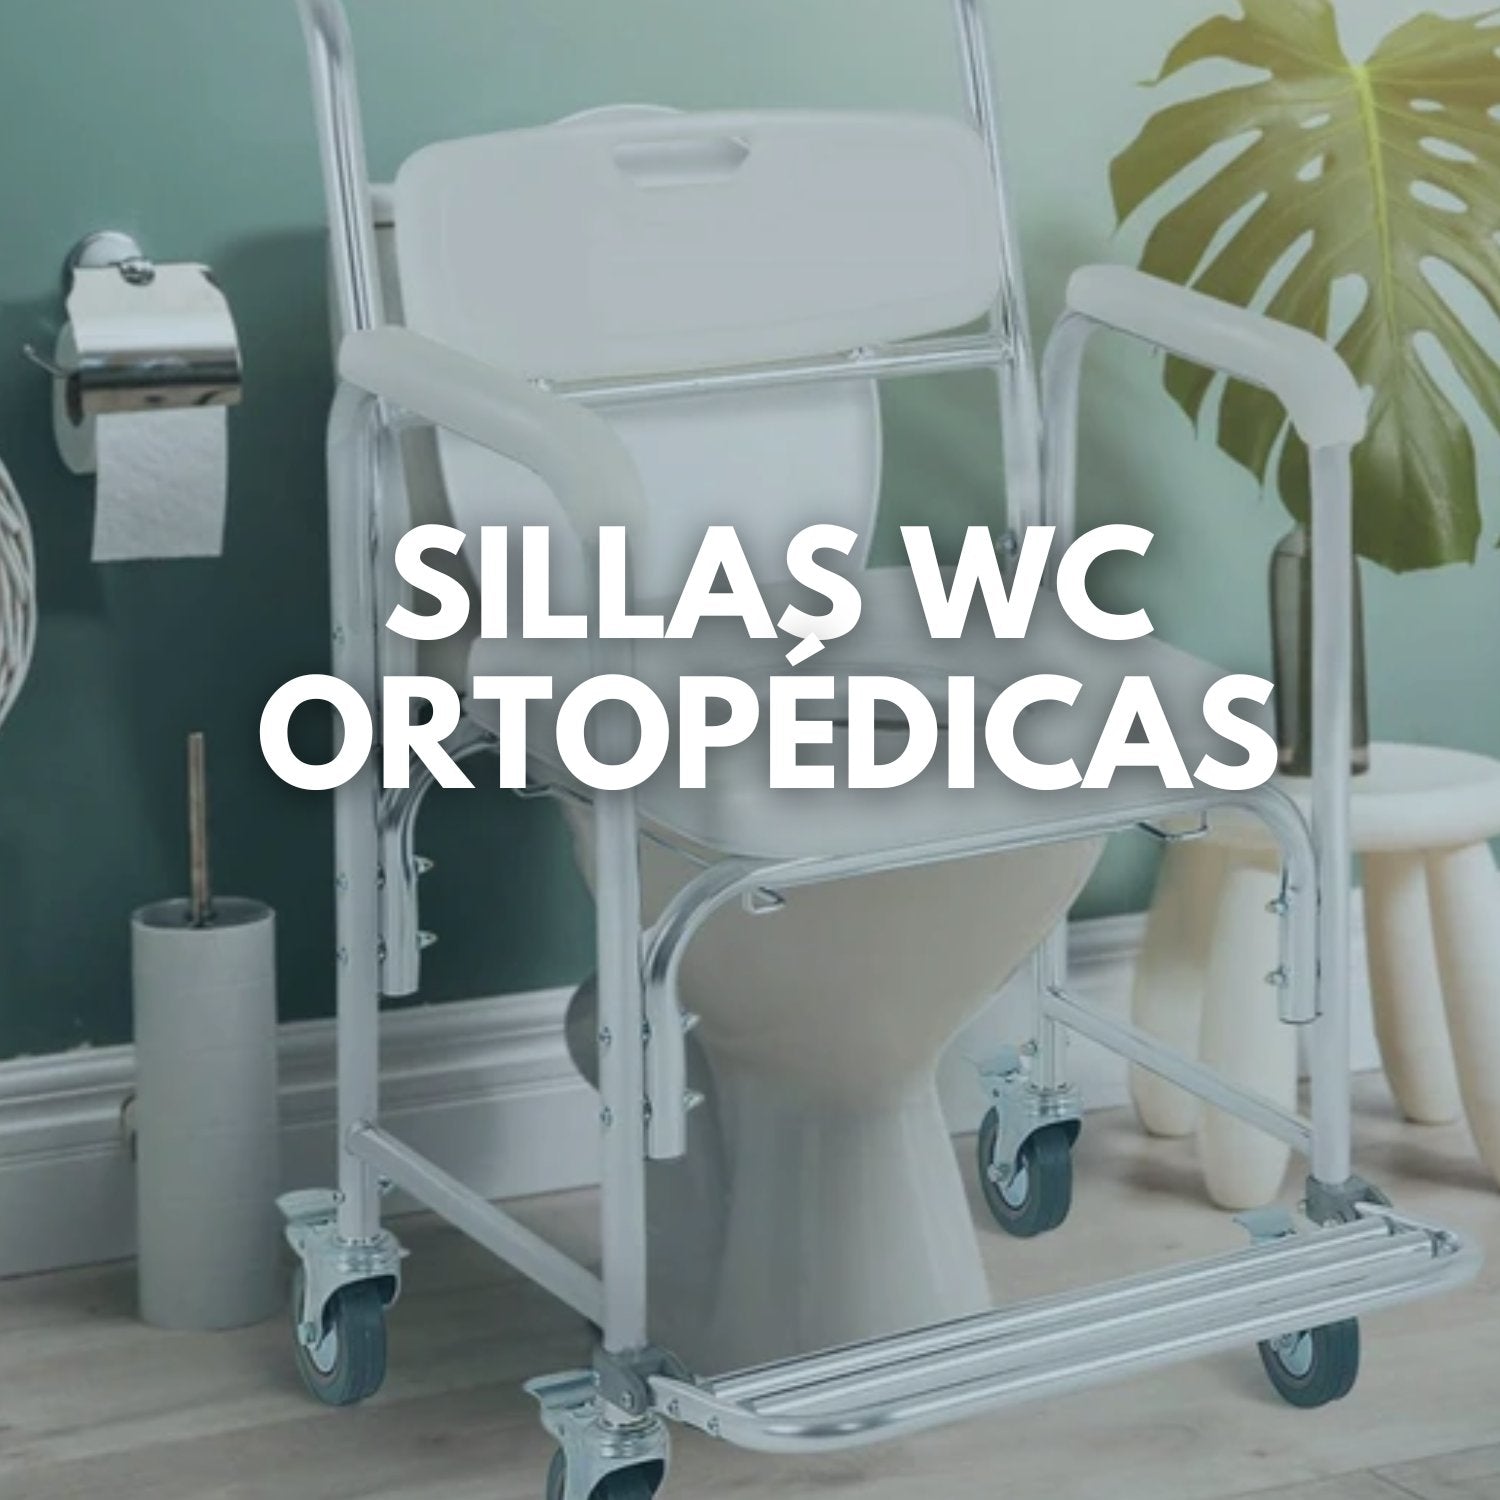 sillas-wc-ortopedicas-ayudas-para-el-baño